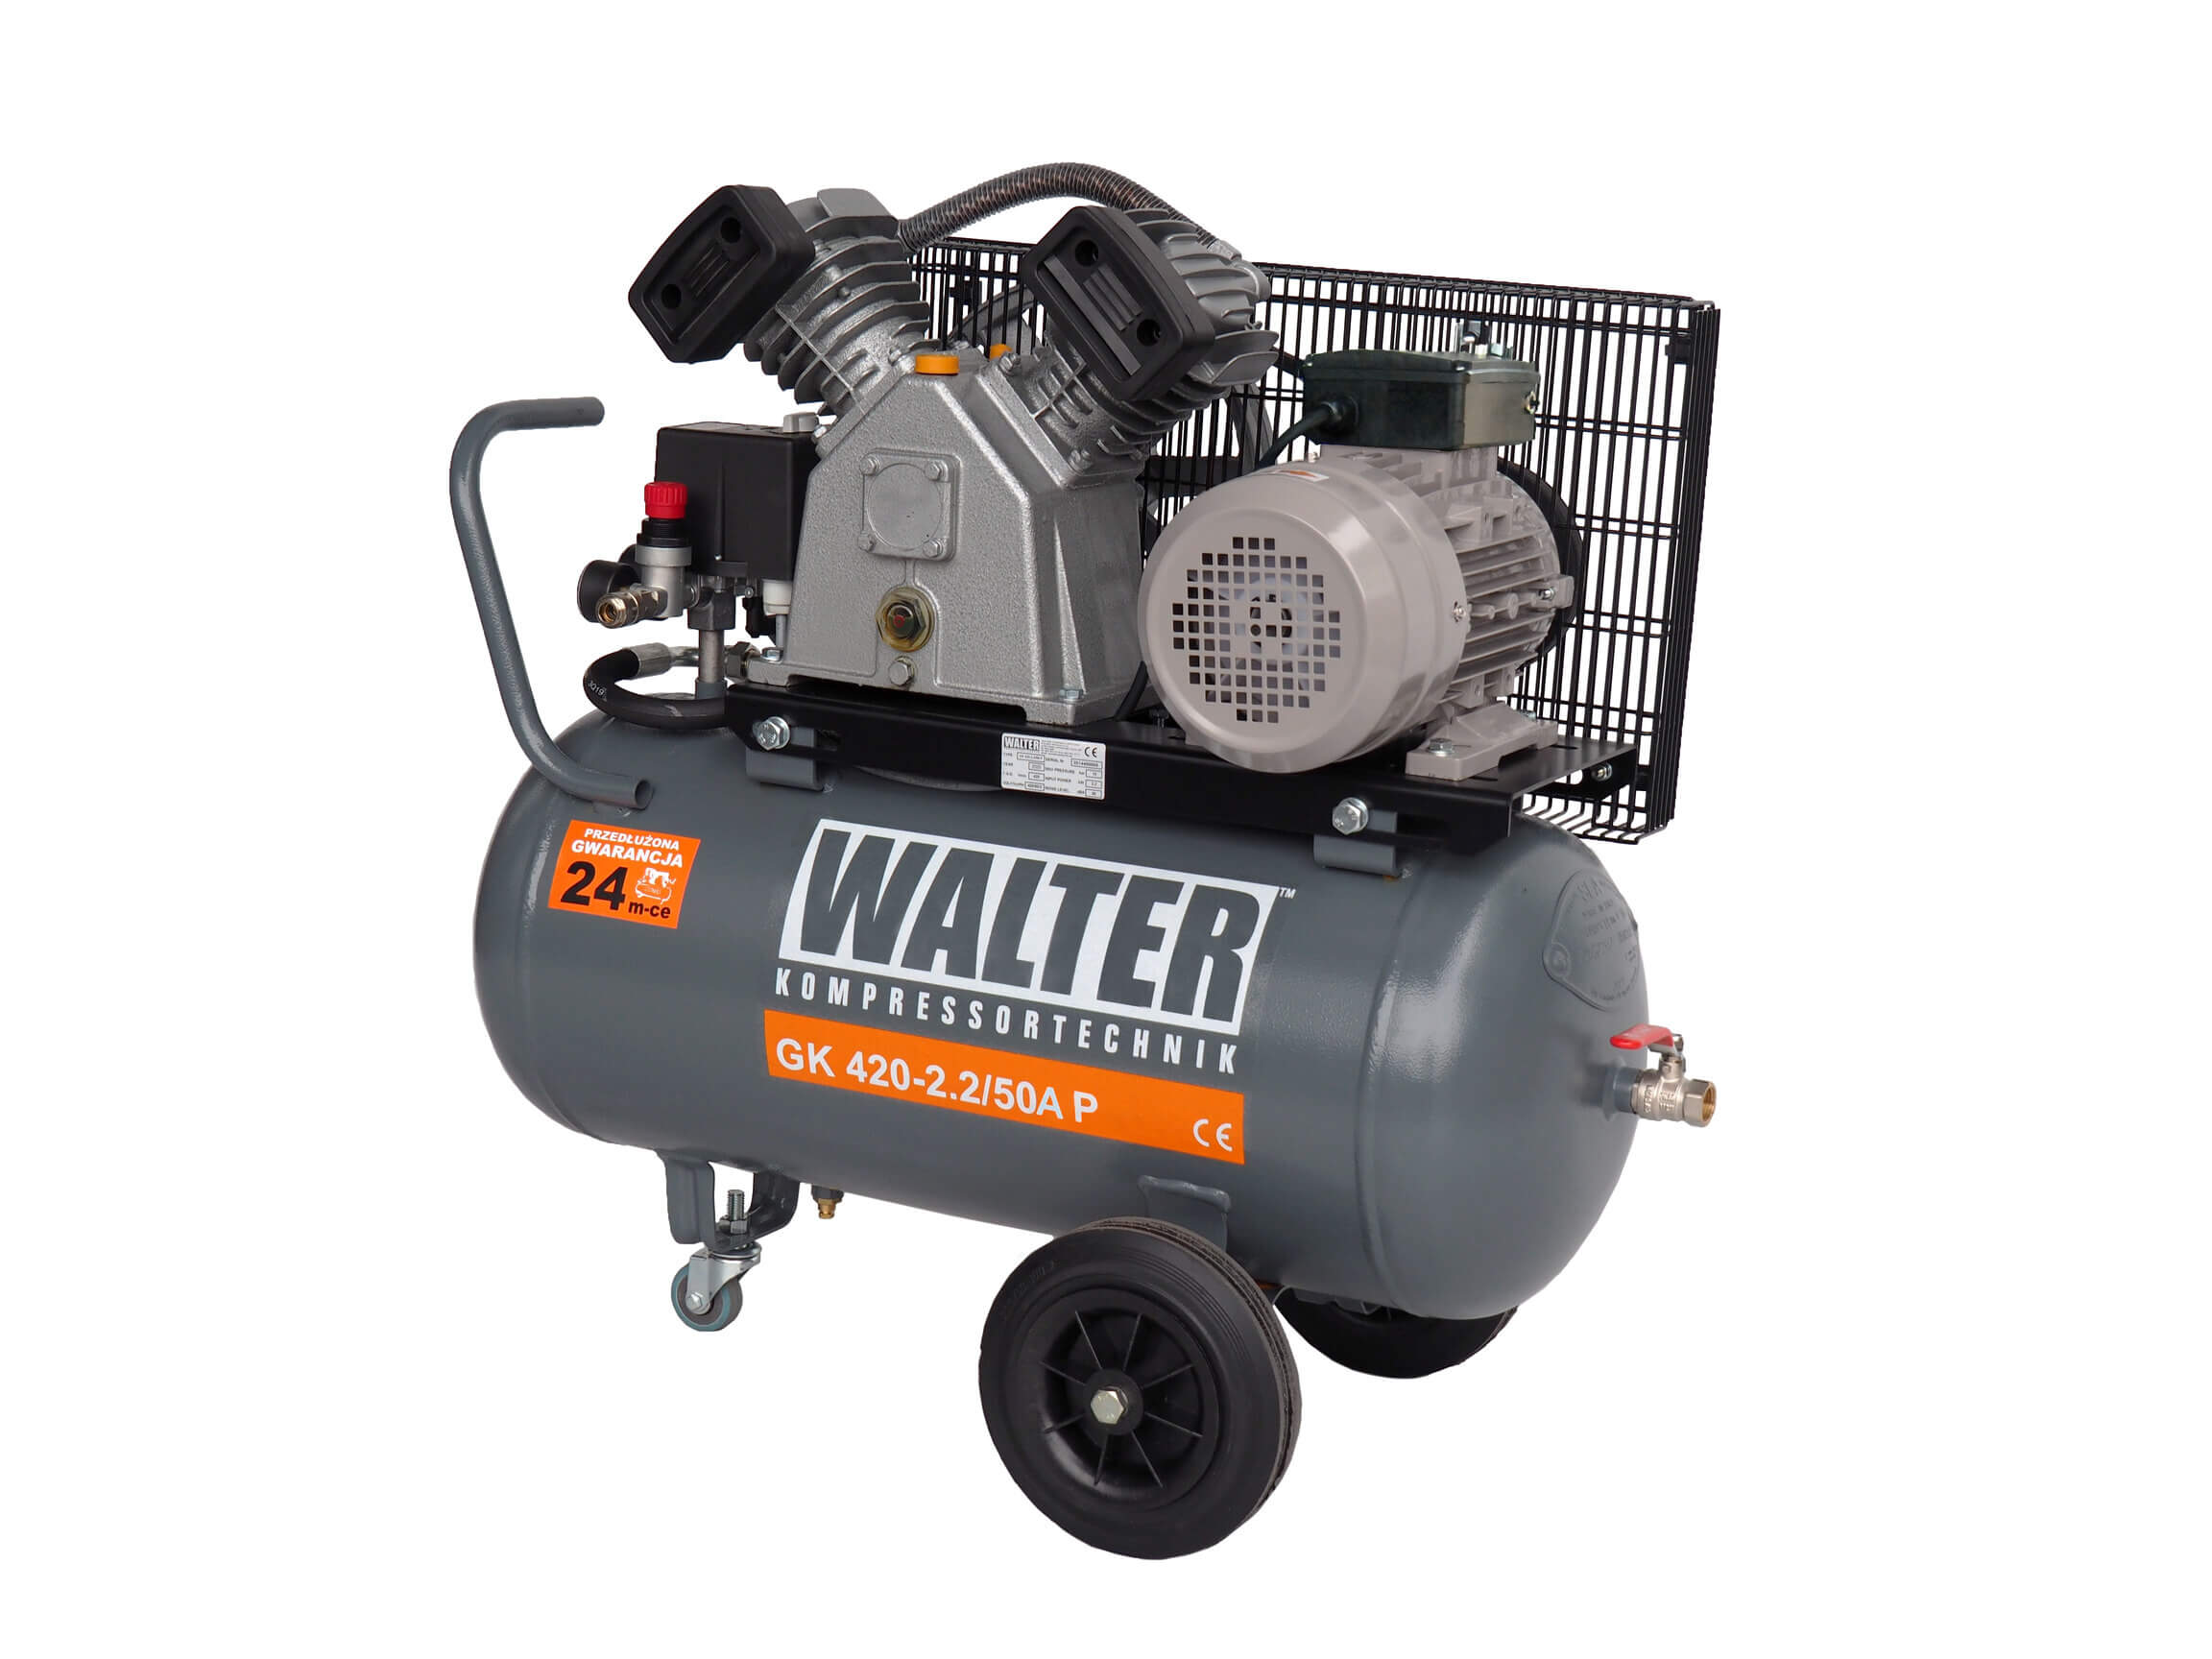 WALTER Litinový pístový kompresor GK420-22-50A příkon 2,2 kW, sací výkon 420 l/min, tlak 10 bar, vzdušník 50 l, napětí 230/50 V/Hz